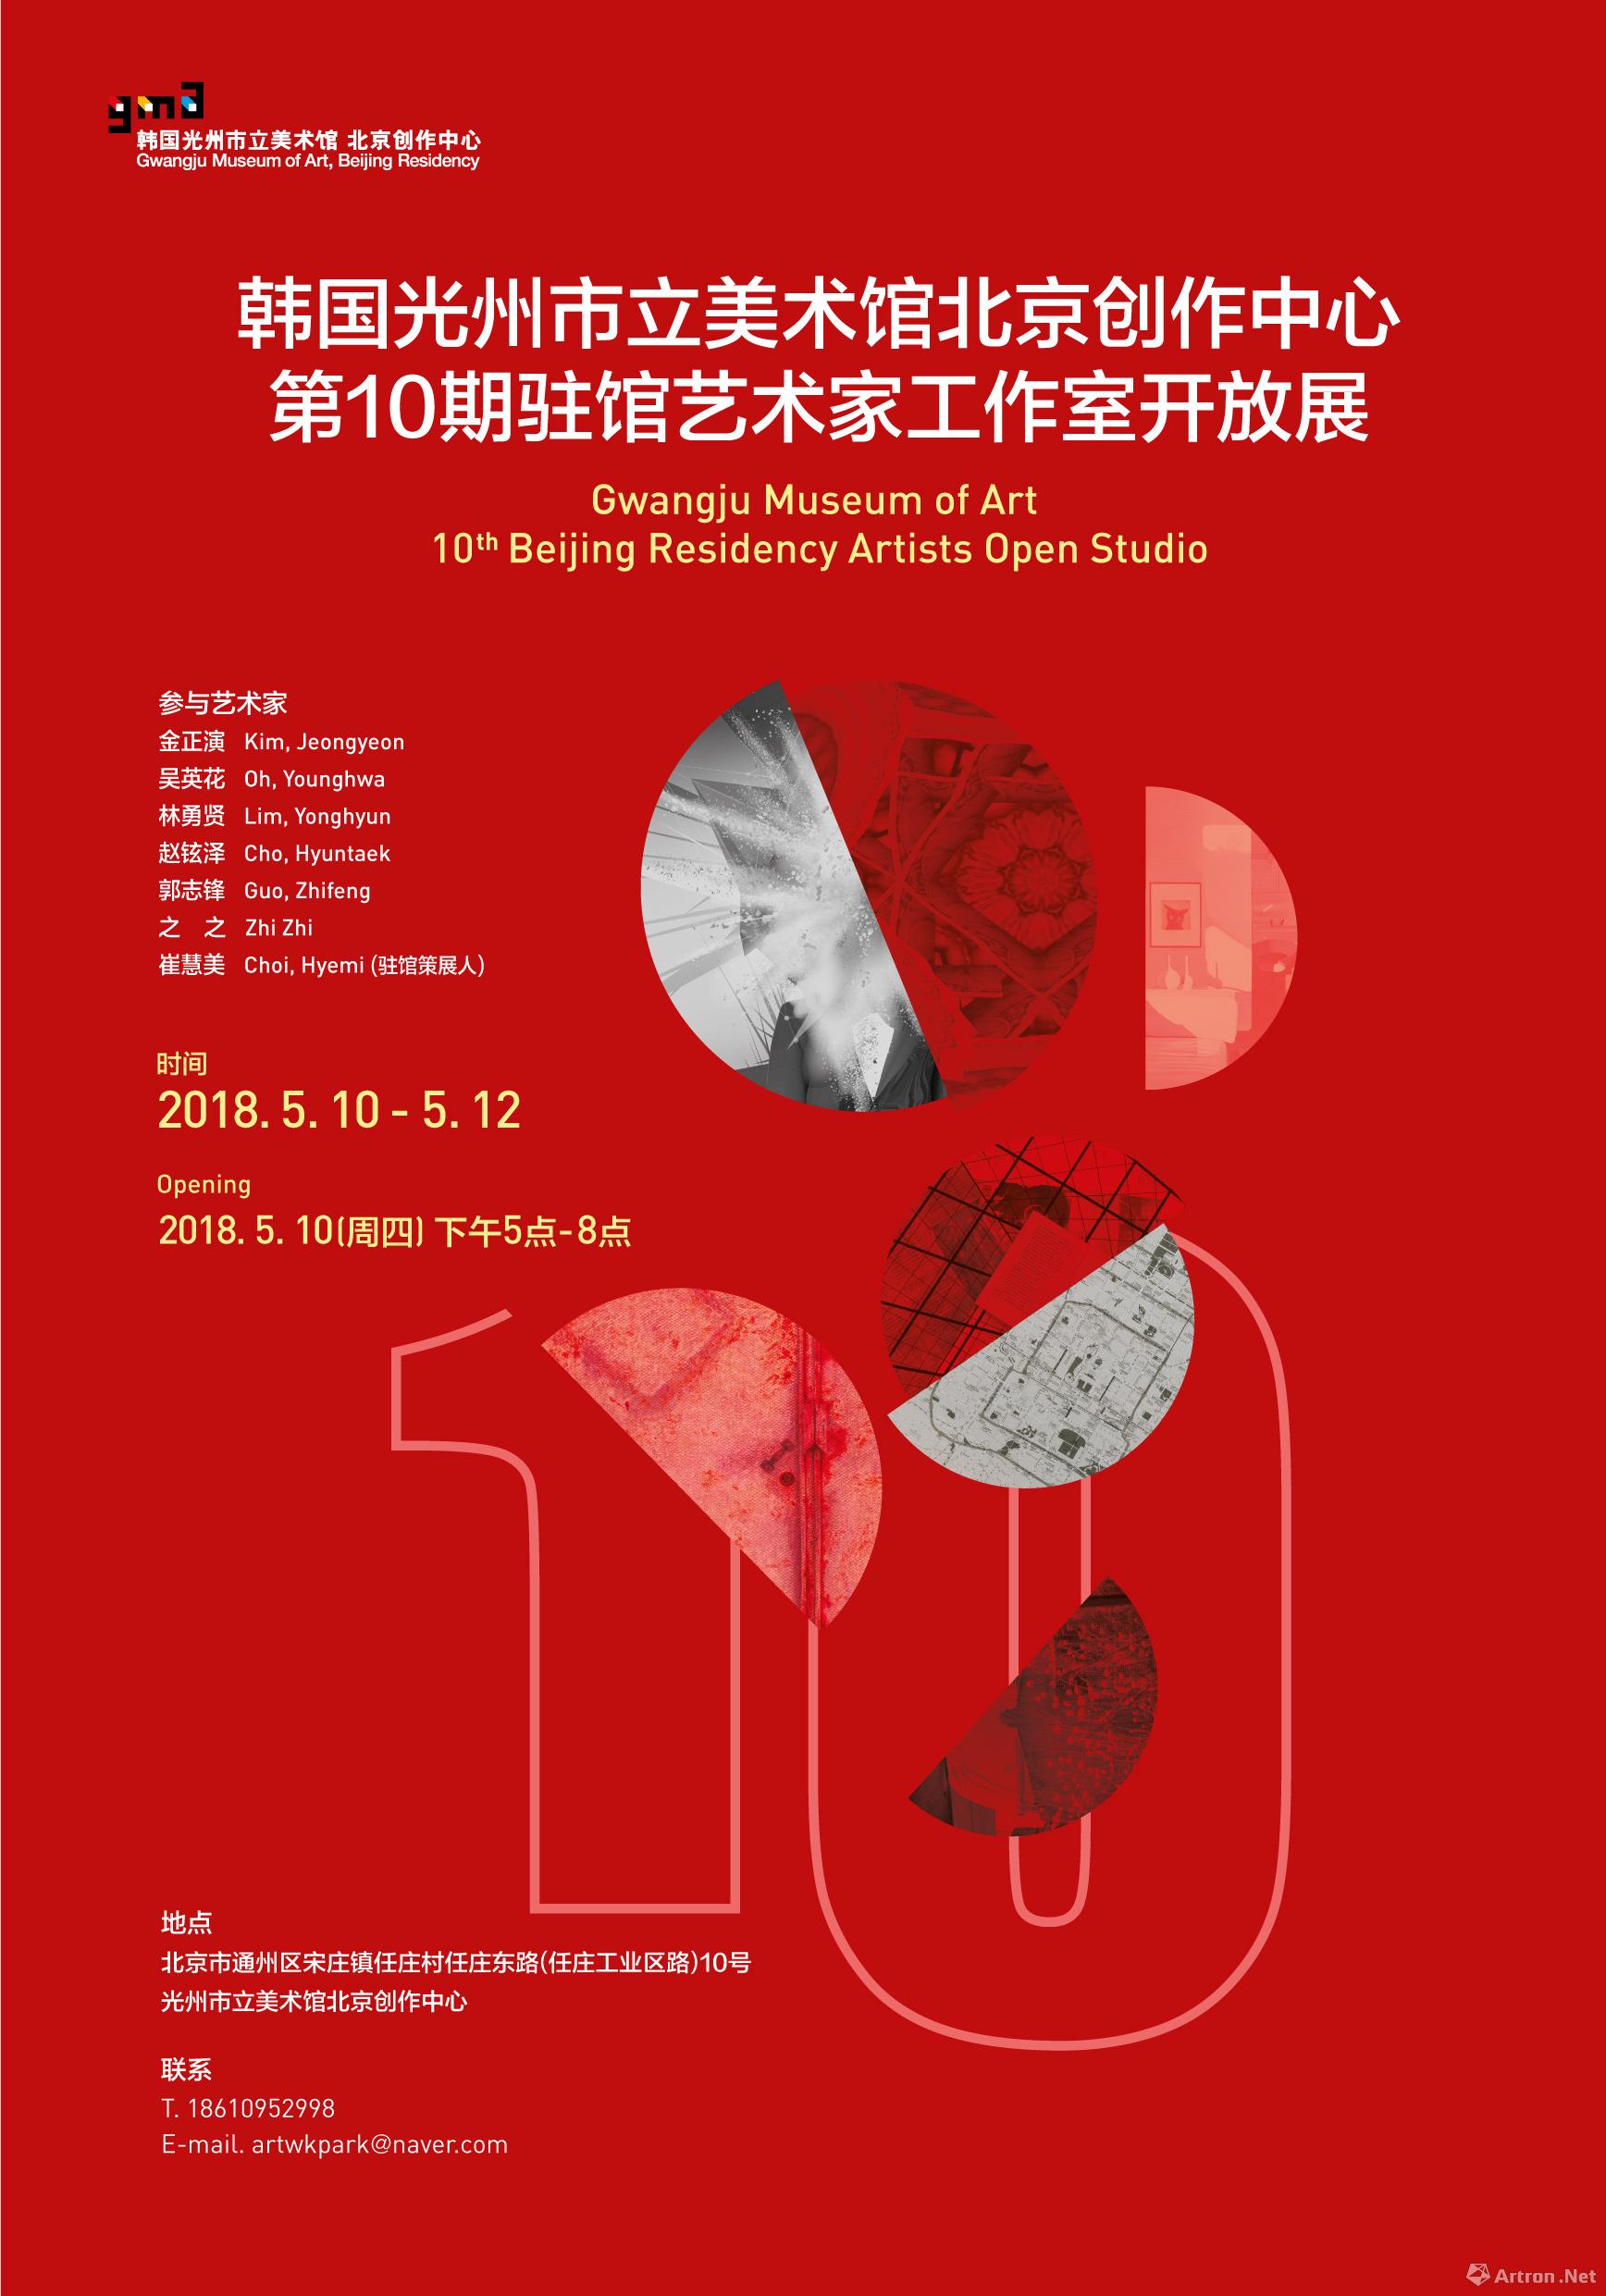 韩国光州市立美术馆北京创作中心第10期驻馆艺术家工作室开放展